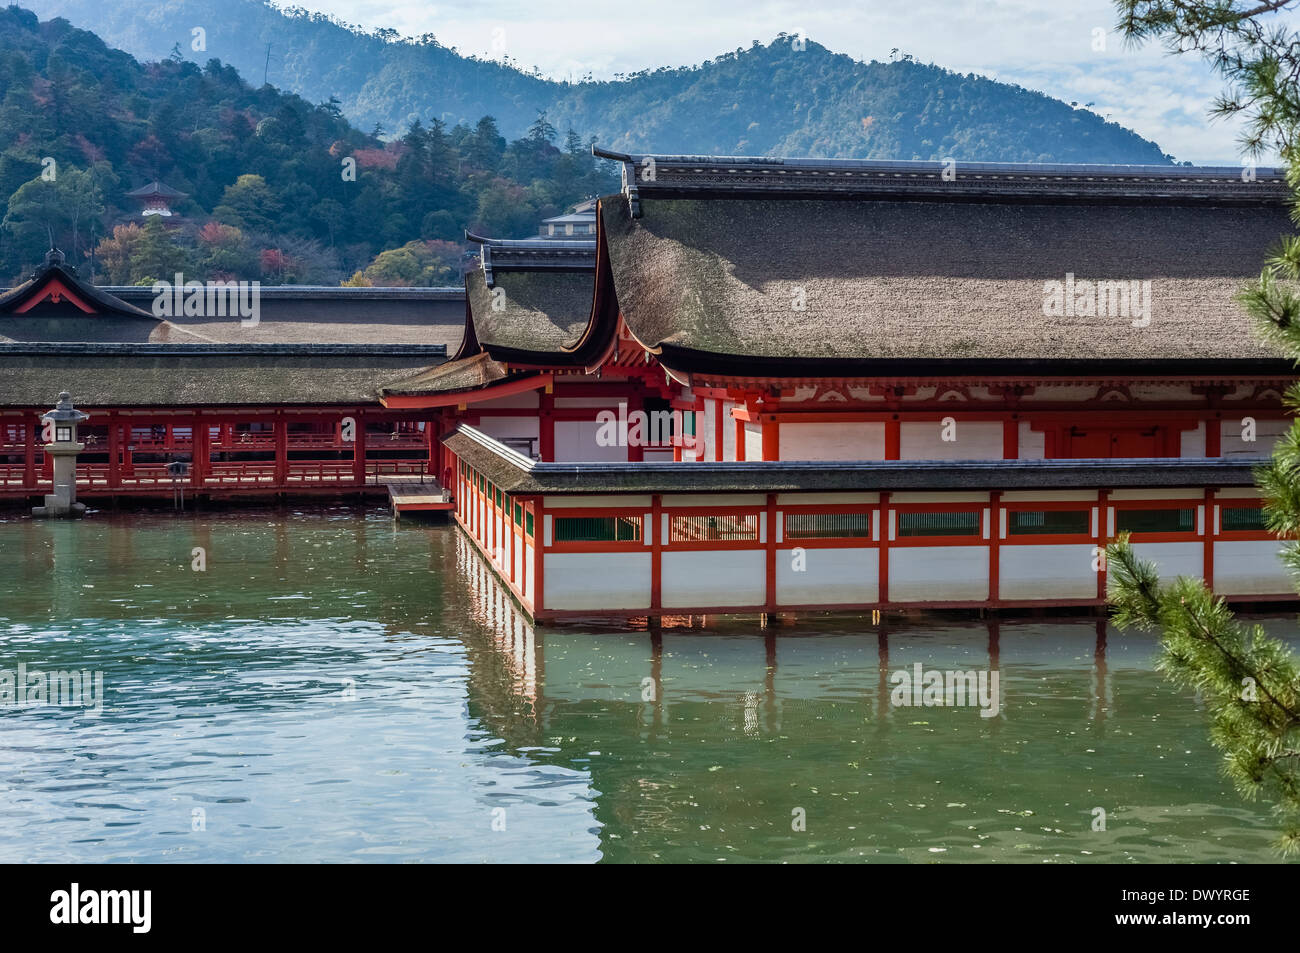 Itsukushima Shrine, Hatsukaichi, Hiroshima Prefecture, Japan Stock Photo